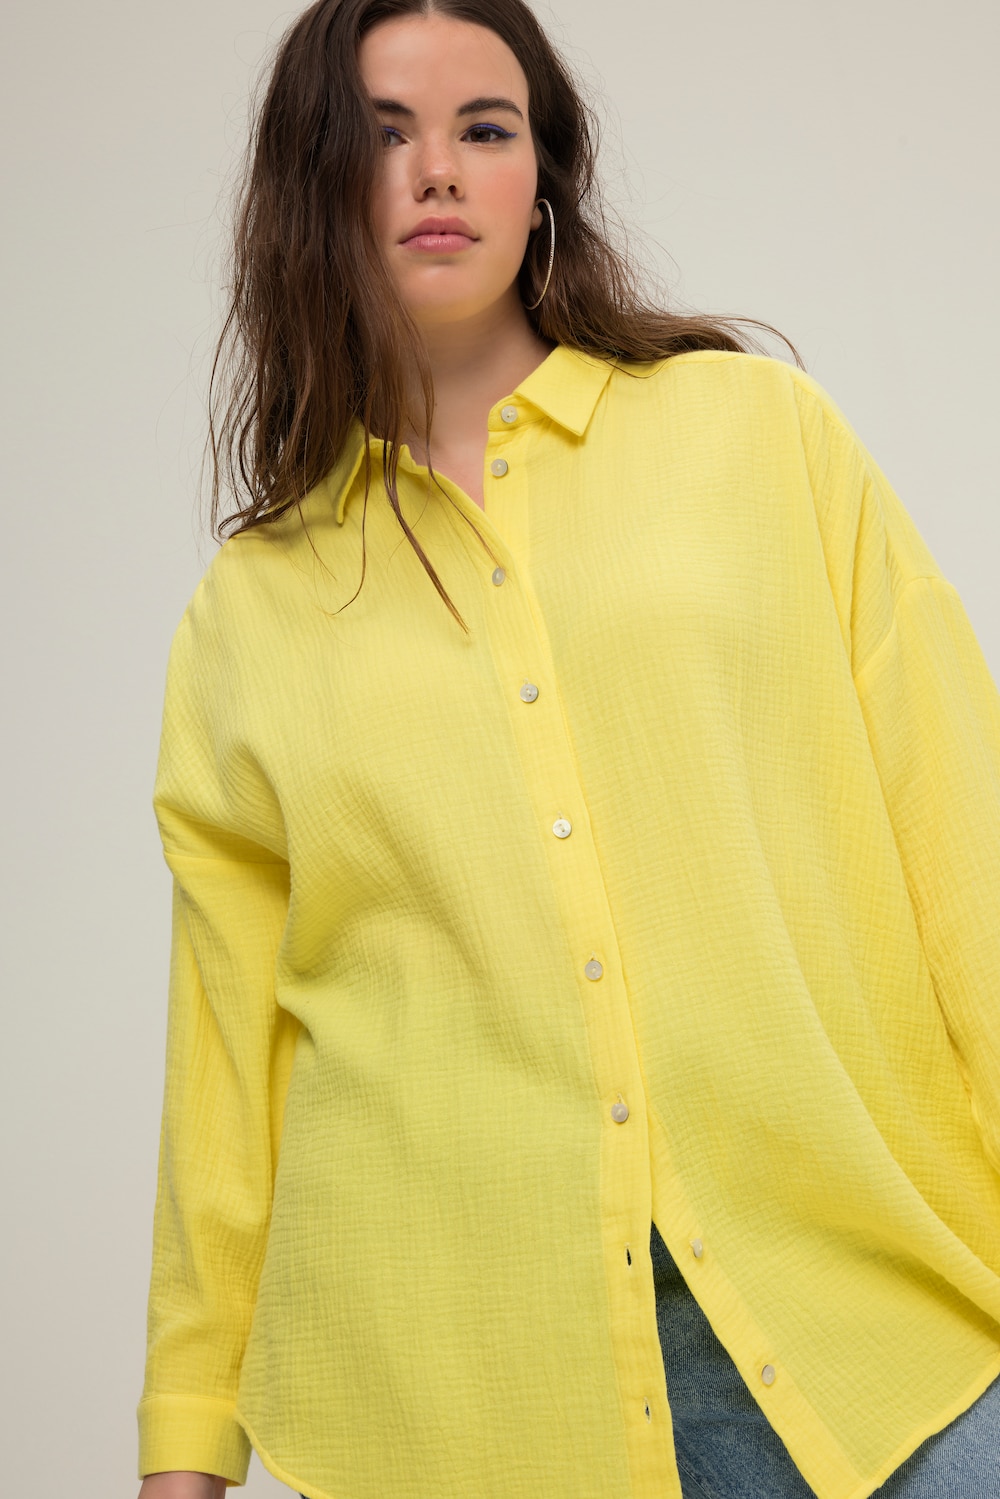 Grote Maten Mousseline blouse, Dames, geel, Maat: 50/52, Katoen, Studio Untold